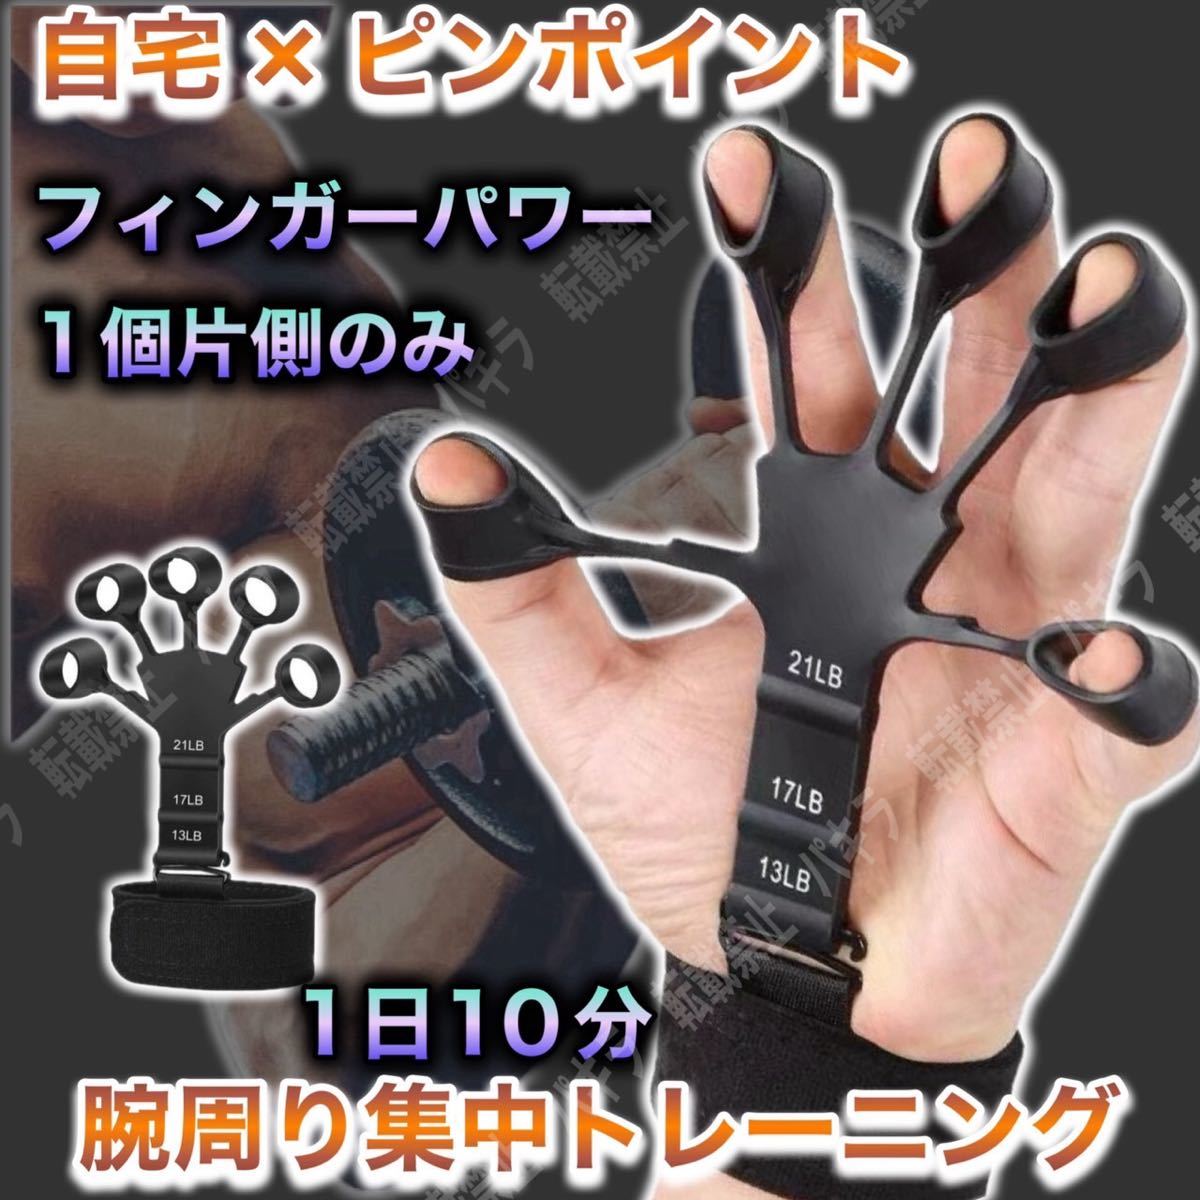 話題 フィンガーパワー 握力 筋トレ 指の力 トレーニング 強化 TikTokの画像1